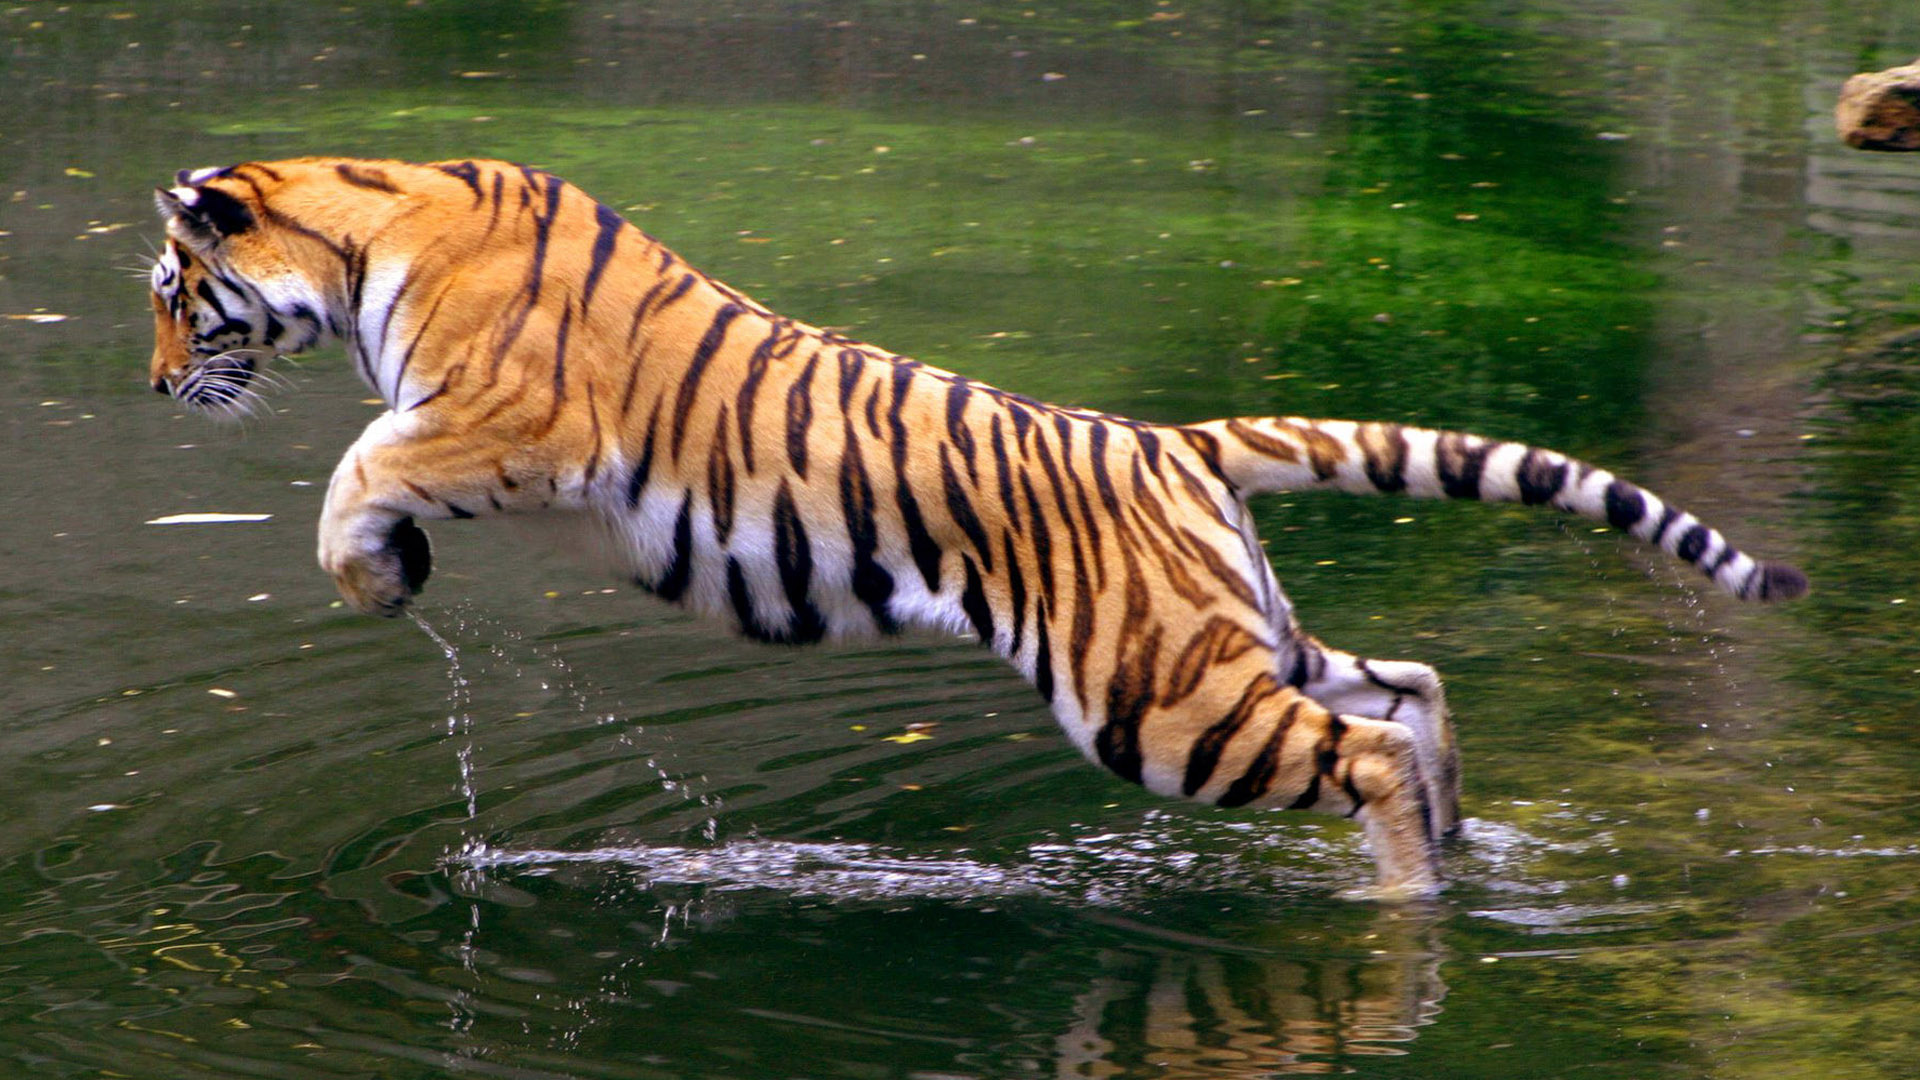 Jumping tiger